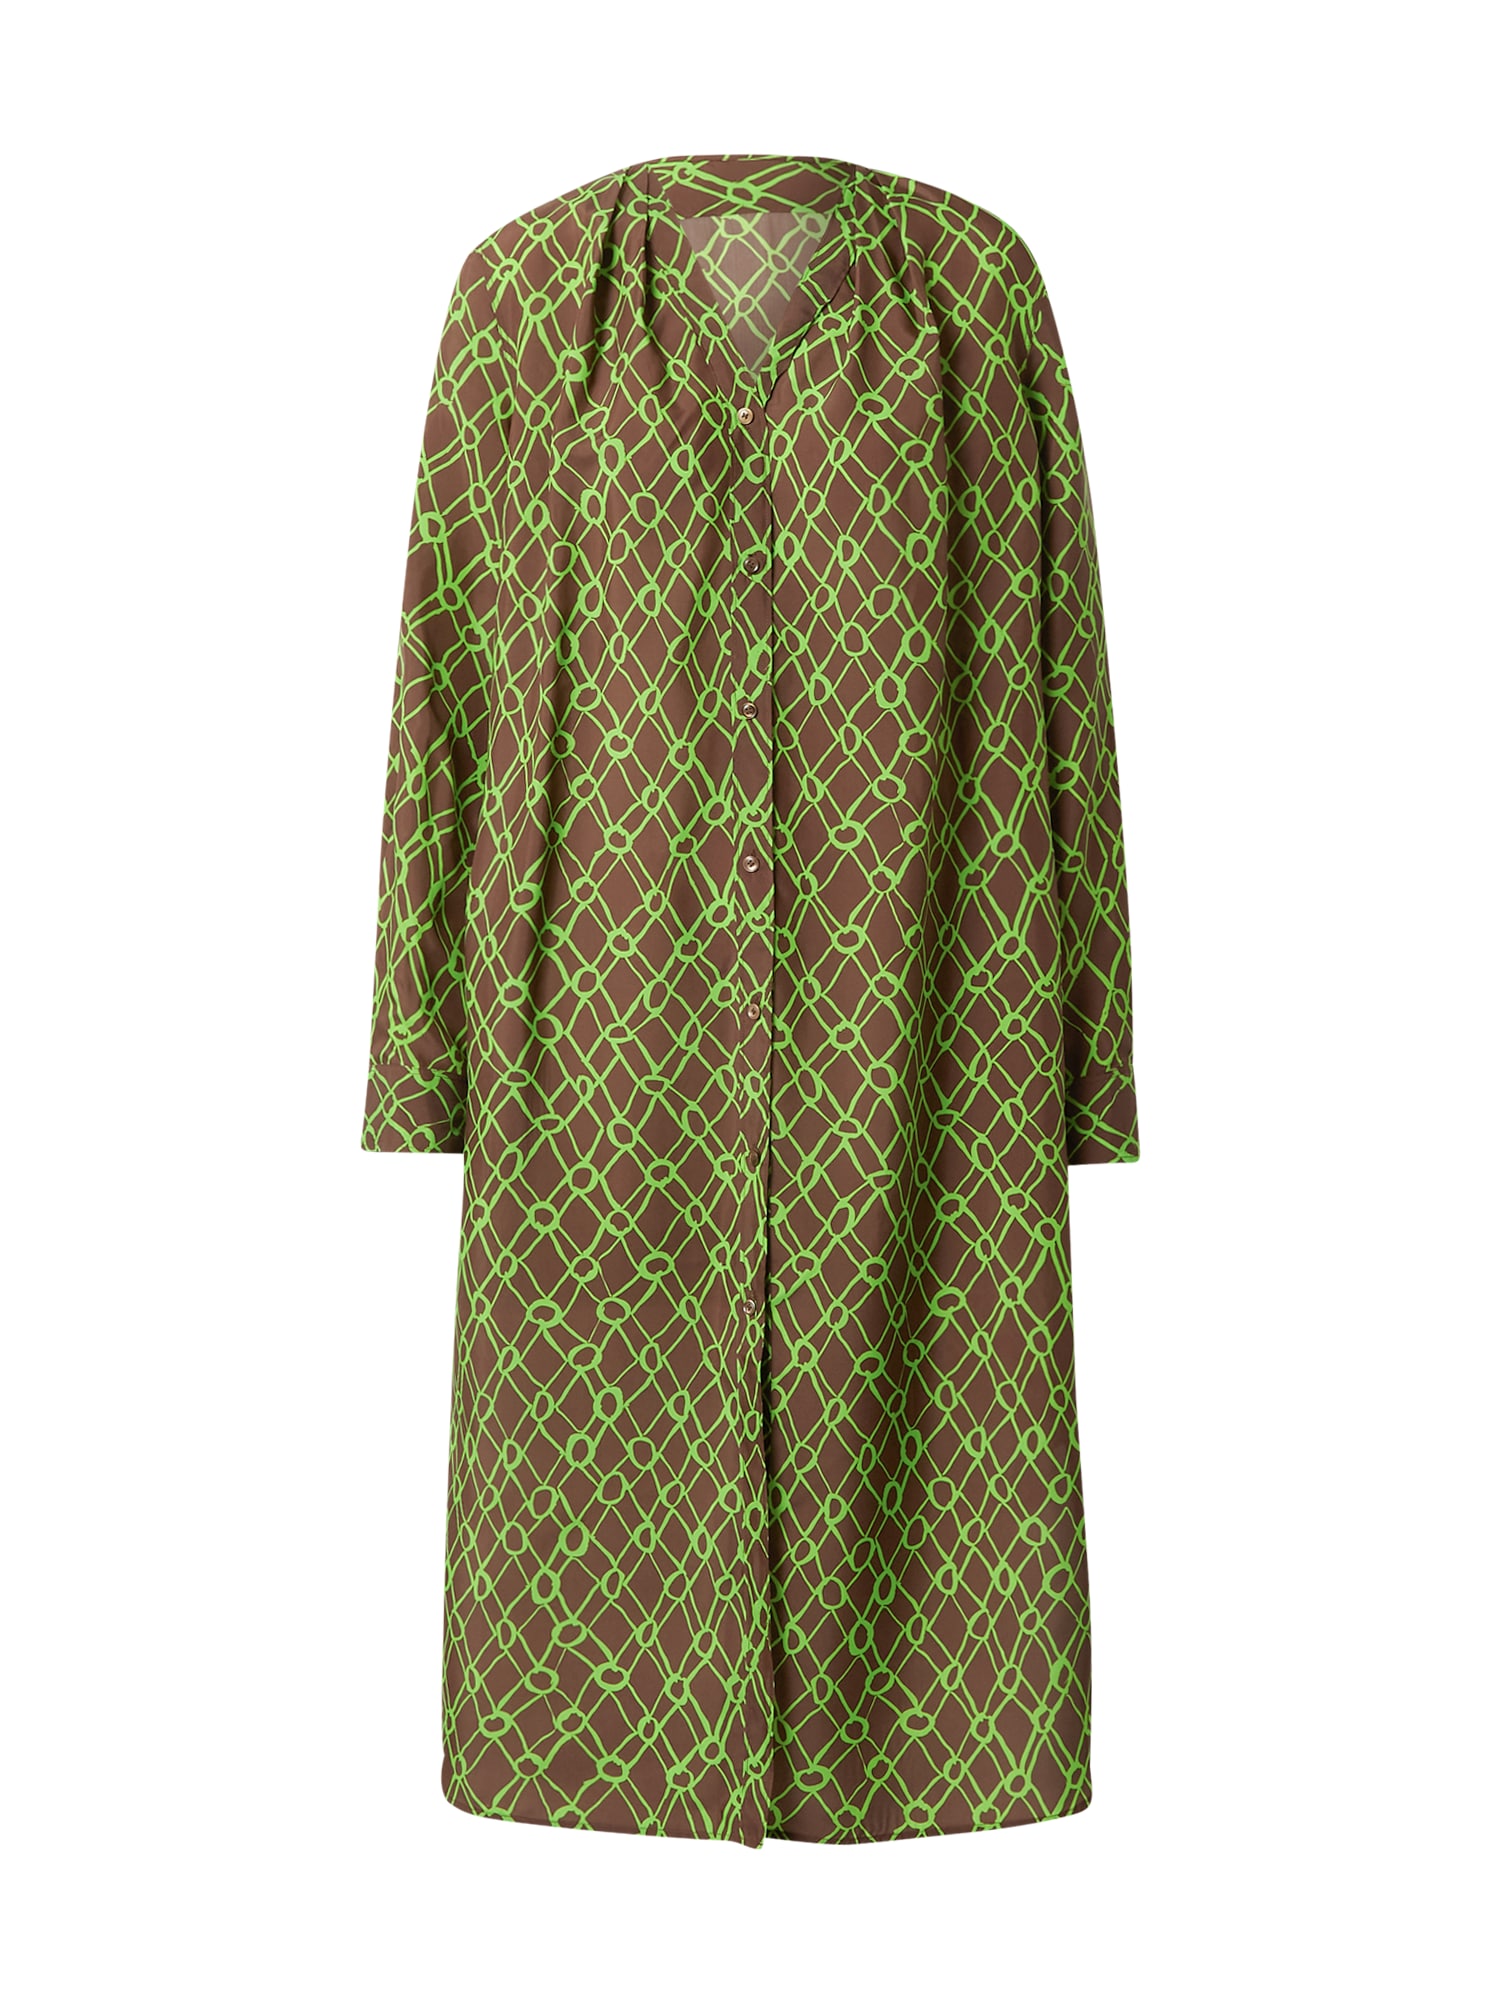 JNBY Palaidinės tipo suknelė žalia / alyvuogių spalva